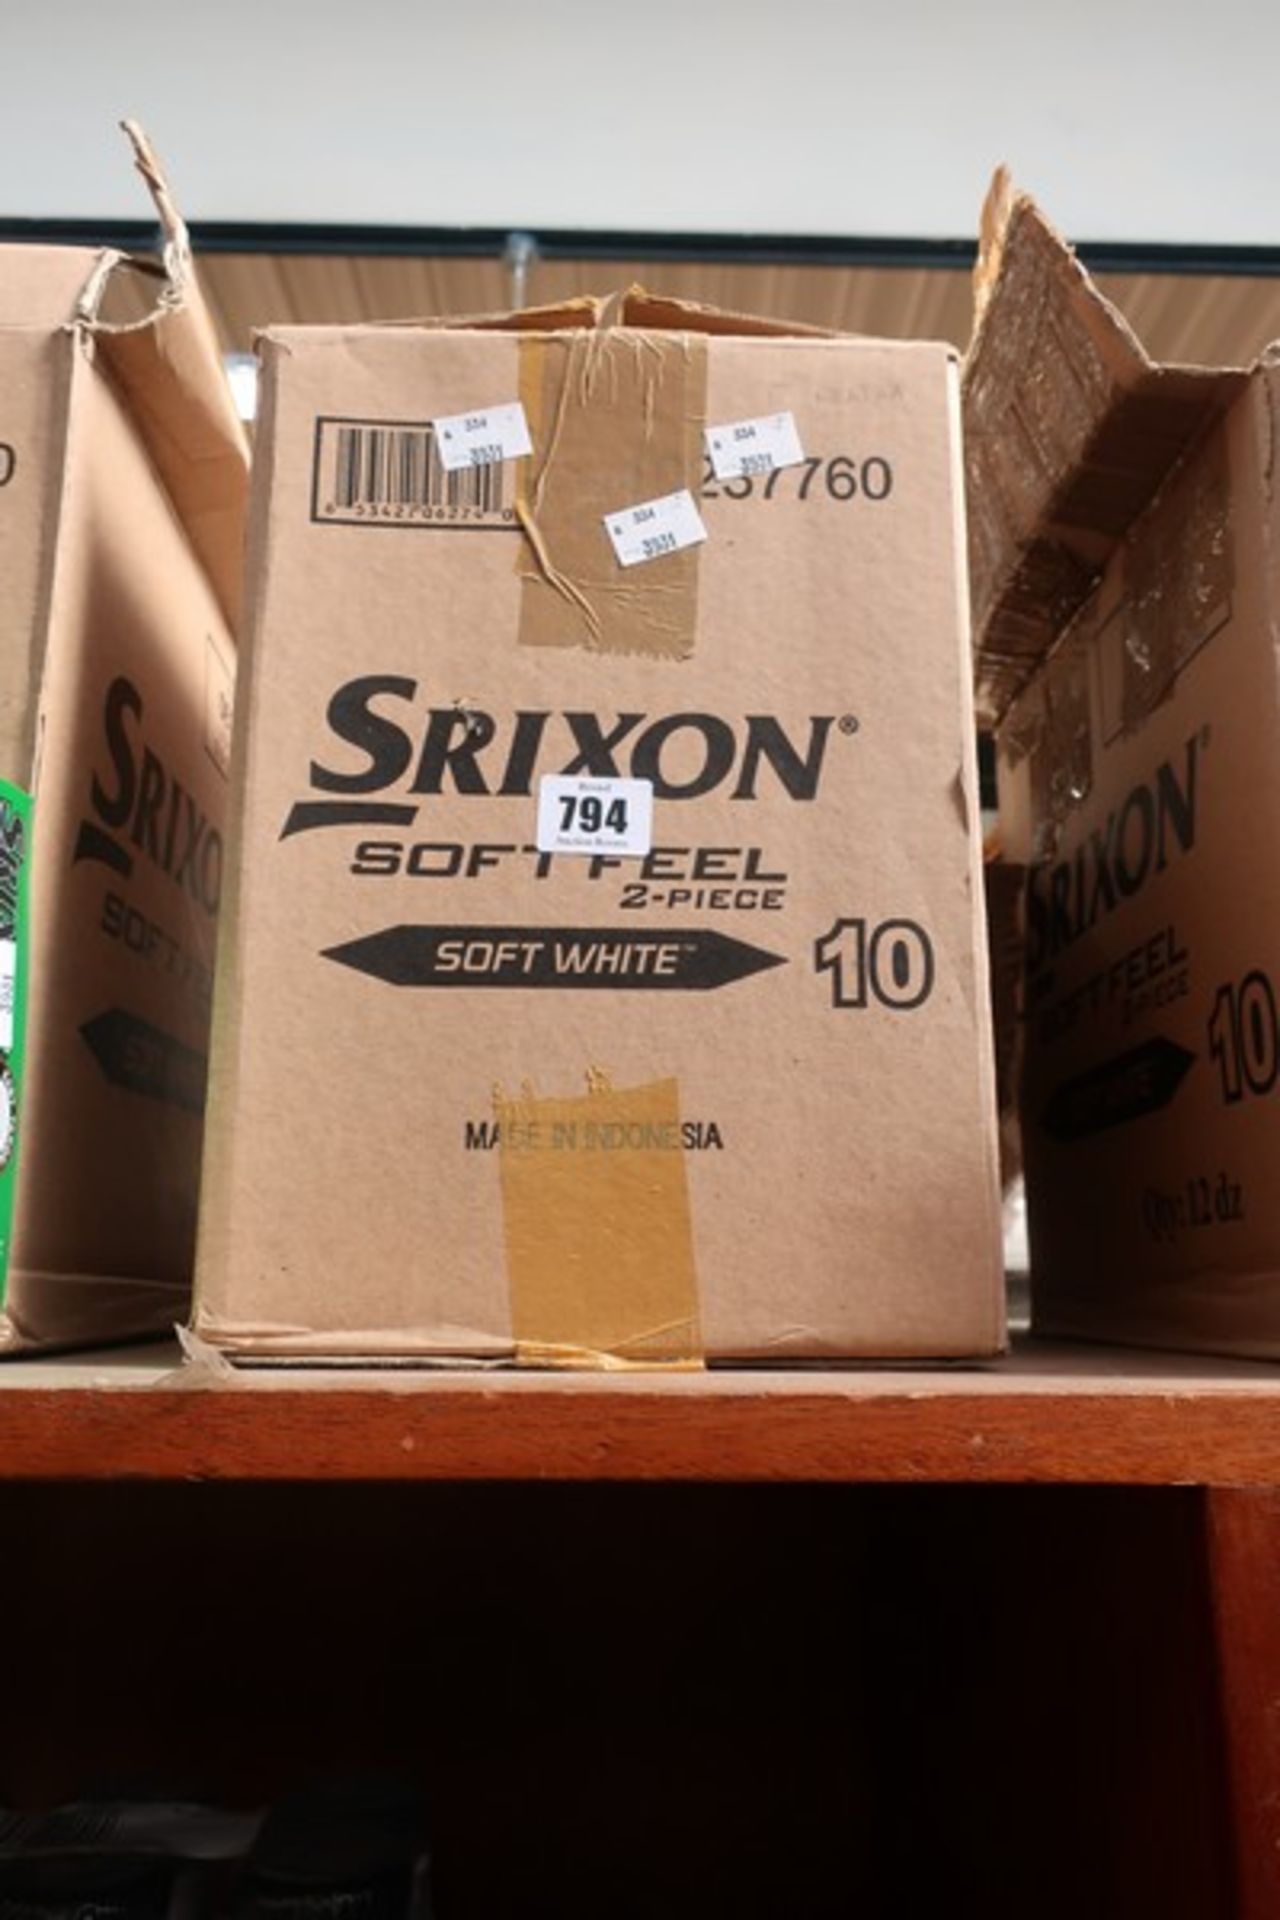 Twelve packs of Sripxon Soft Feel soft white golf balls (12 balls per pack).